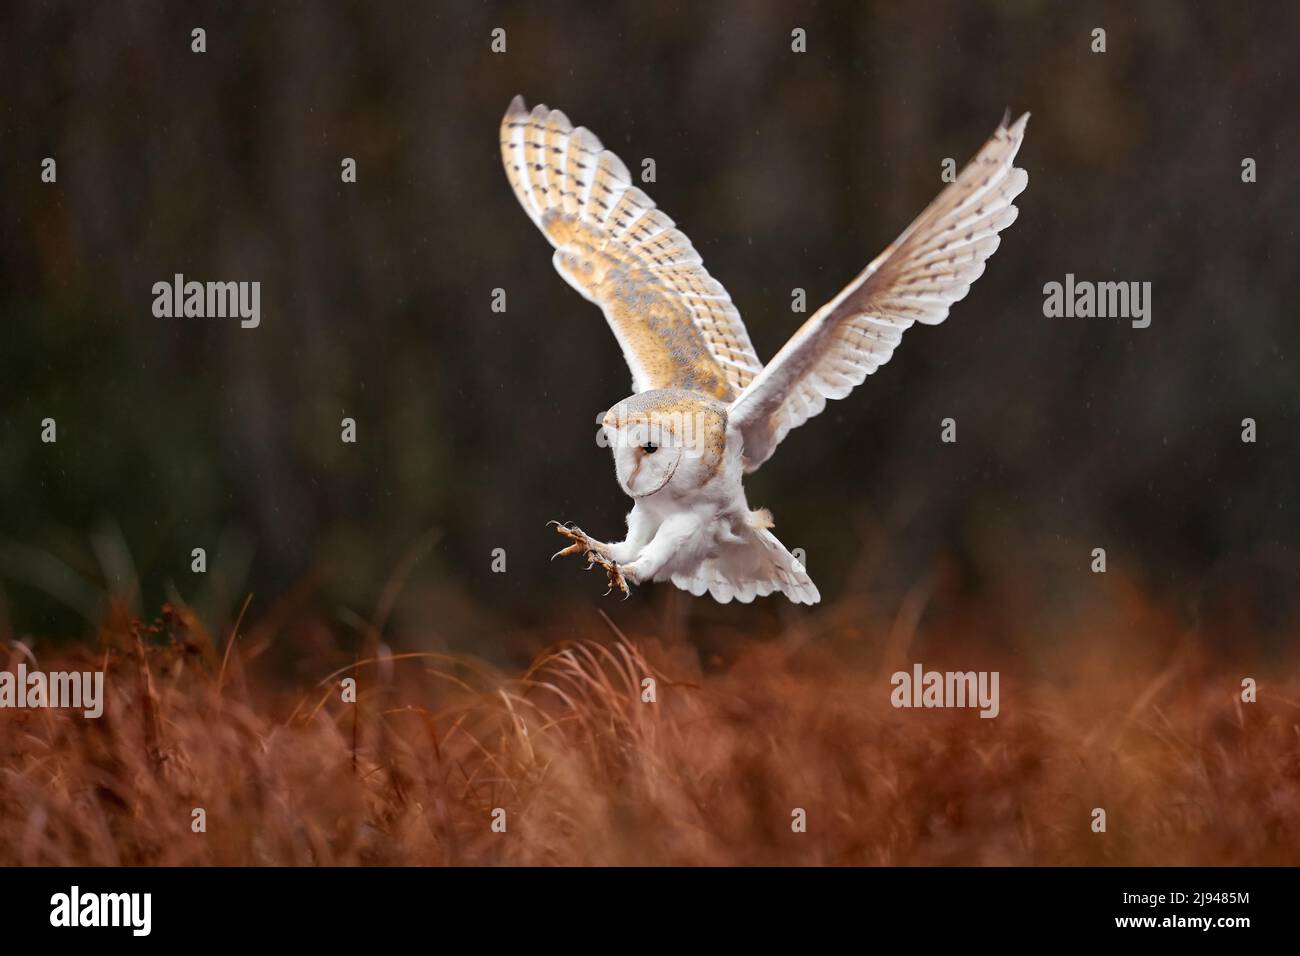 Eule Landeflug mit offenen Flügeln. Barn Owl, Tyto alba, Flug über rotem Gras am Morgen. Tierwelt Vogelszene aus der Natur. Kalter Morgenaufgang, Stockfoto